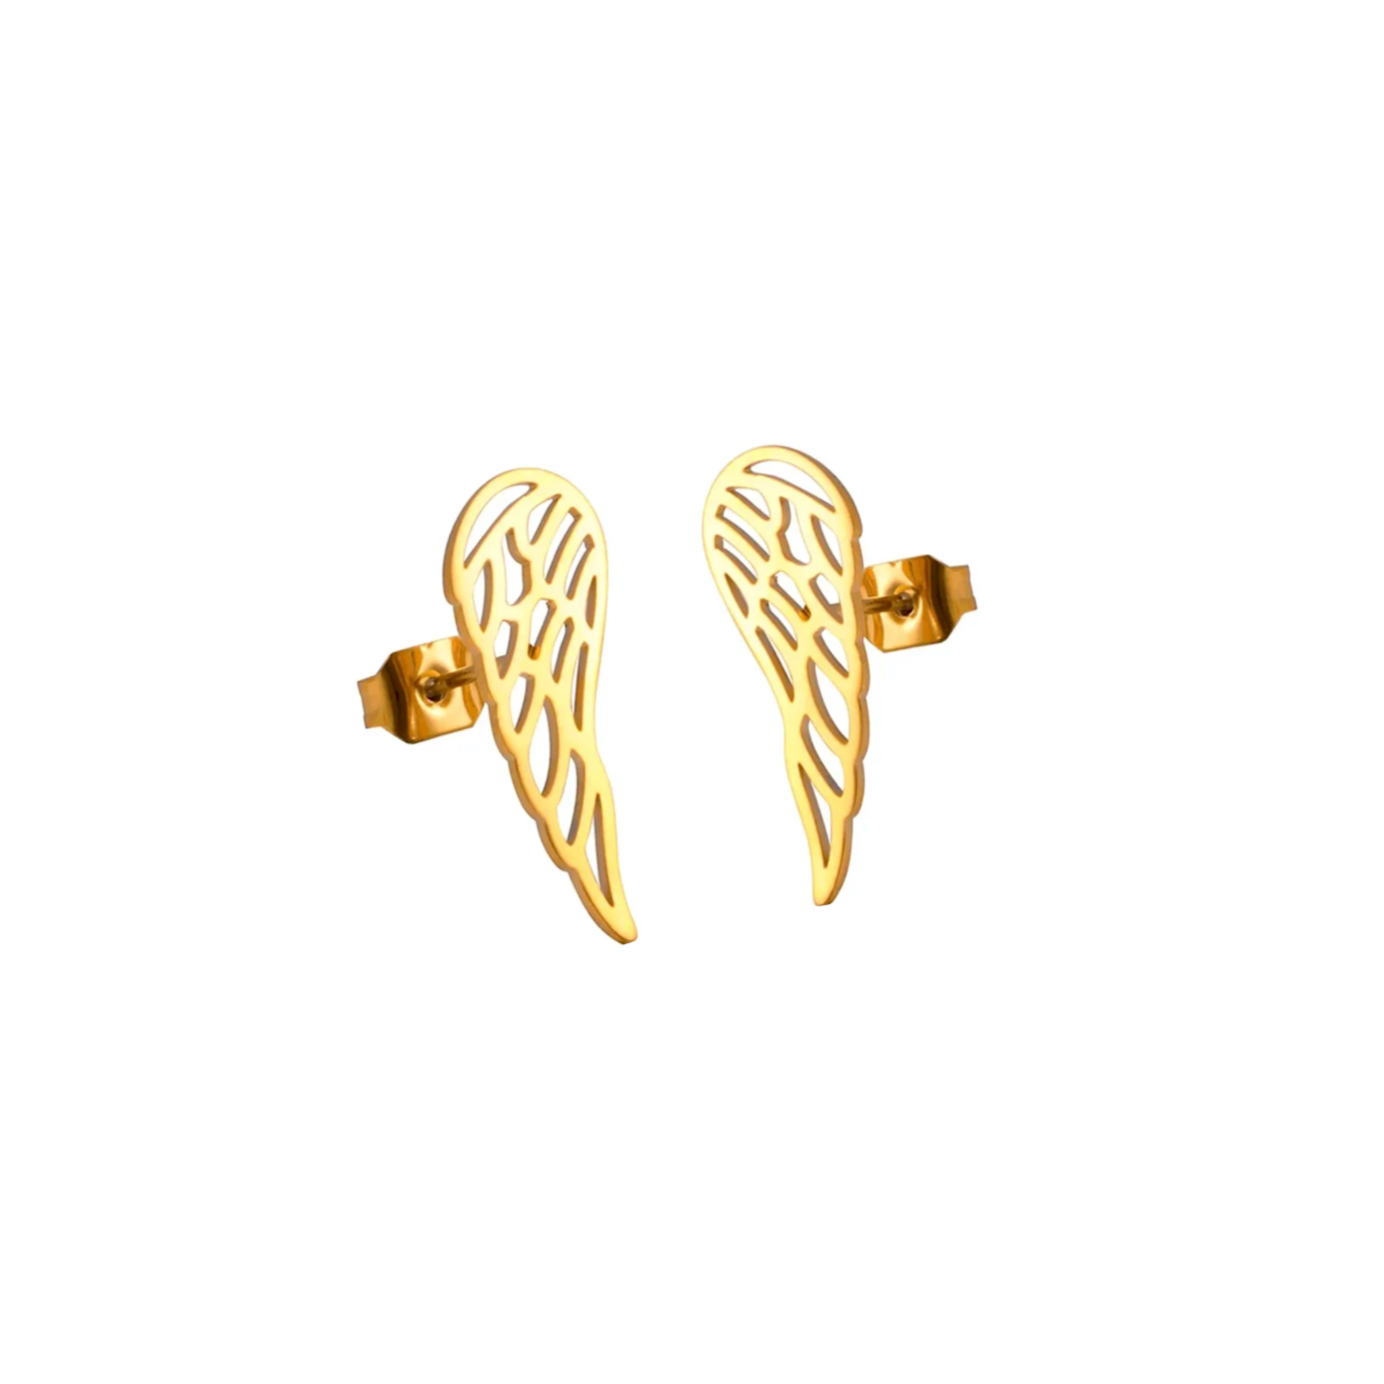 Boucles d'oreilles acier or petites ailes d'ange Détails produit : Couleur or. Acier inoxydable doré. Petits pendentifs ailes d'ange. Taille 12 mm x 5 mm.  Version couleur argent